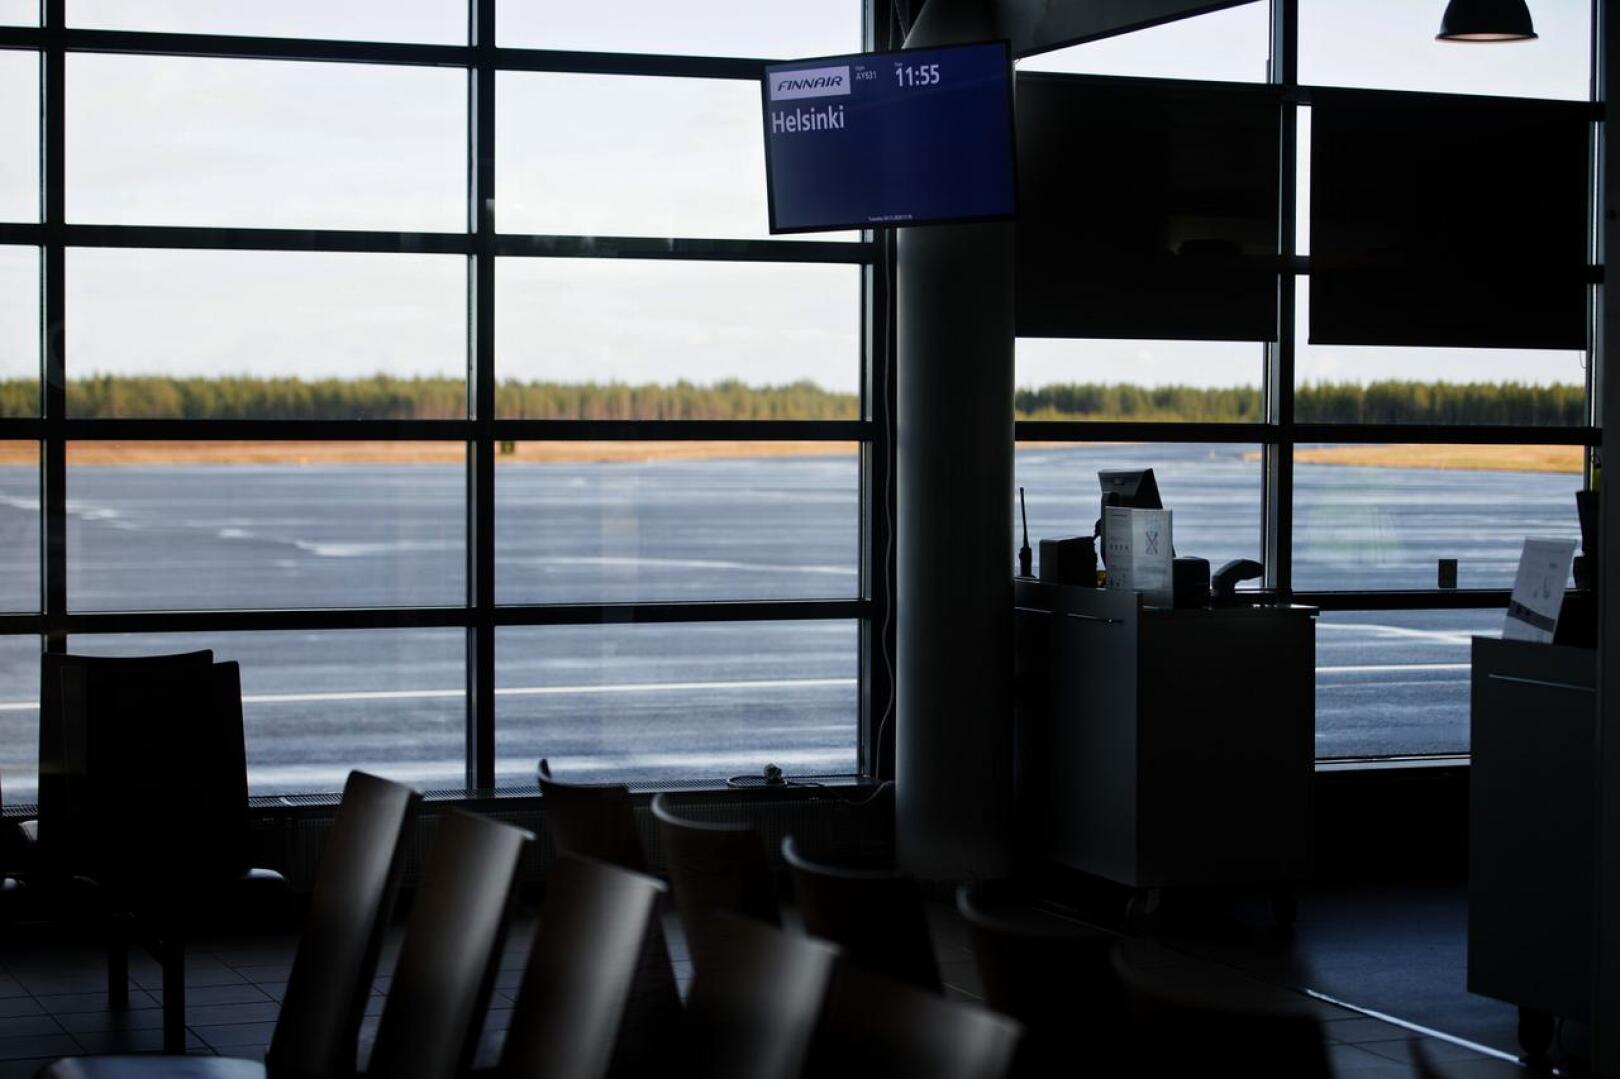 Kokkola-Pietarsaaren lentoasema on yksi maakuntalentokentistä, joiden lentoja Jolkkonen kritisoi HS:n jutussa.